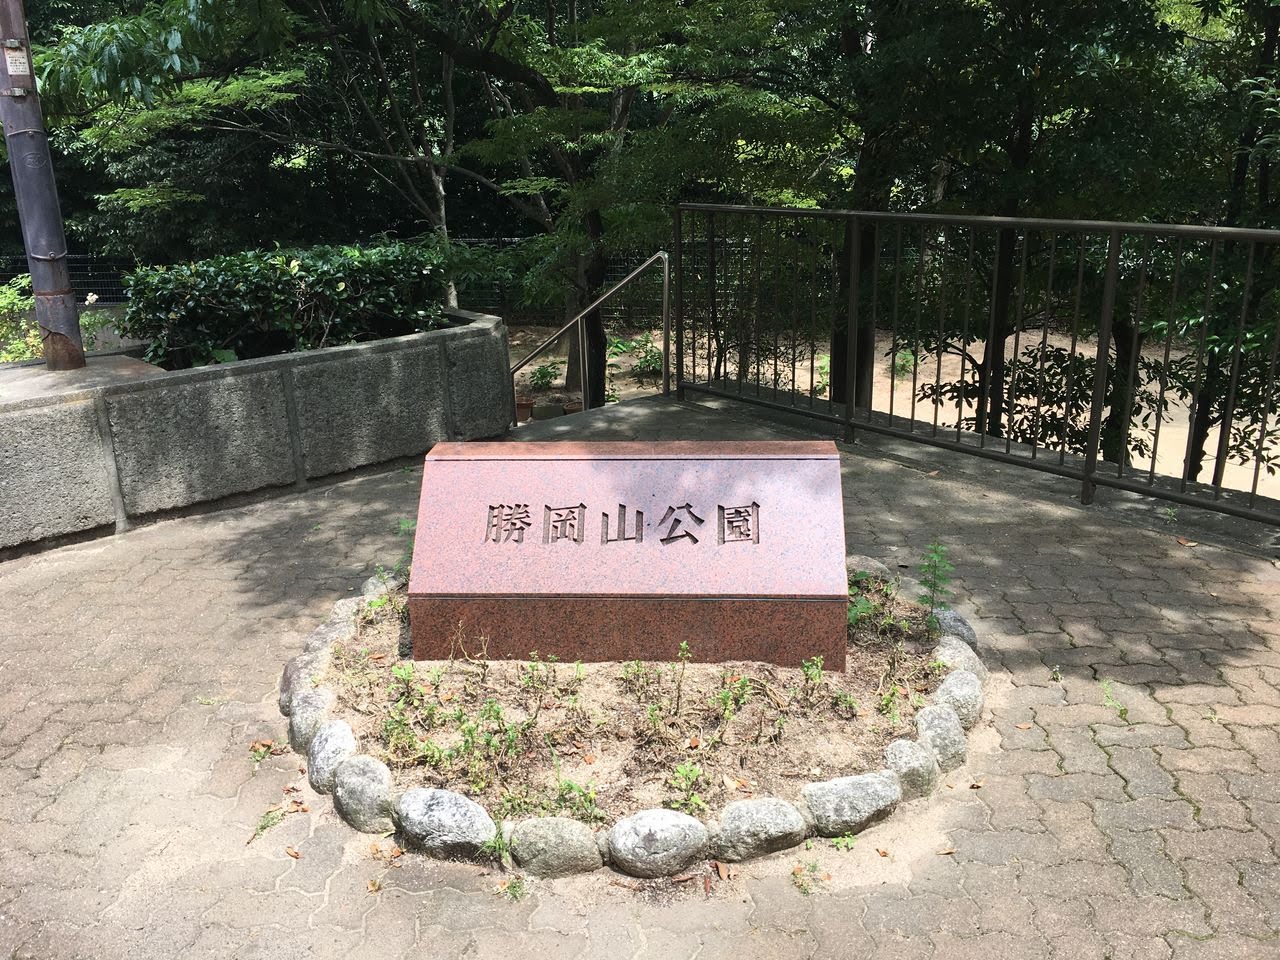 1923 1000 勝岡山公園 神戸市灘区 日本1000公園